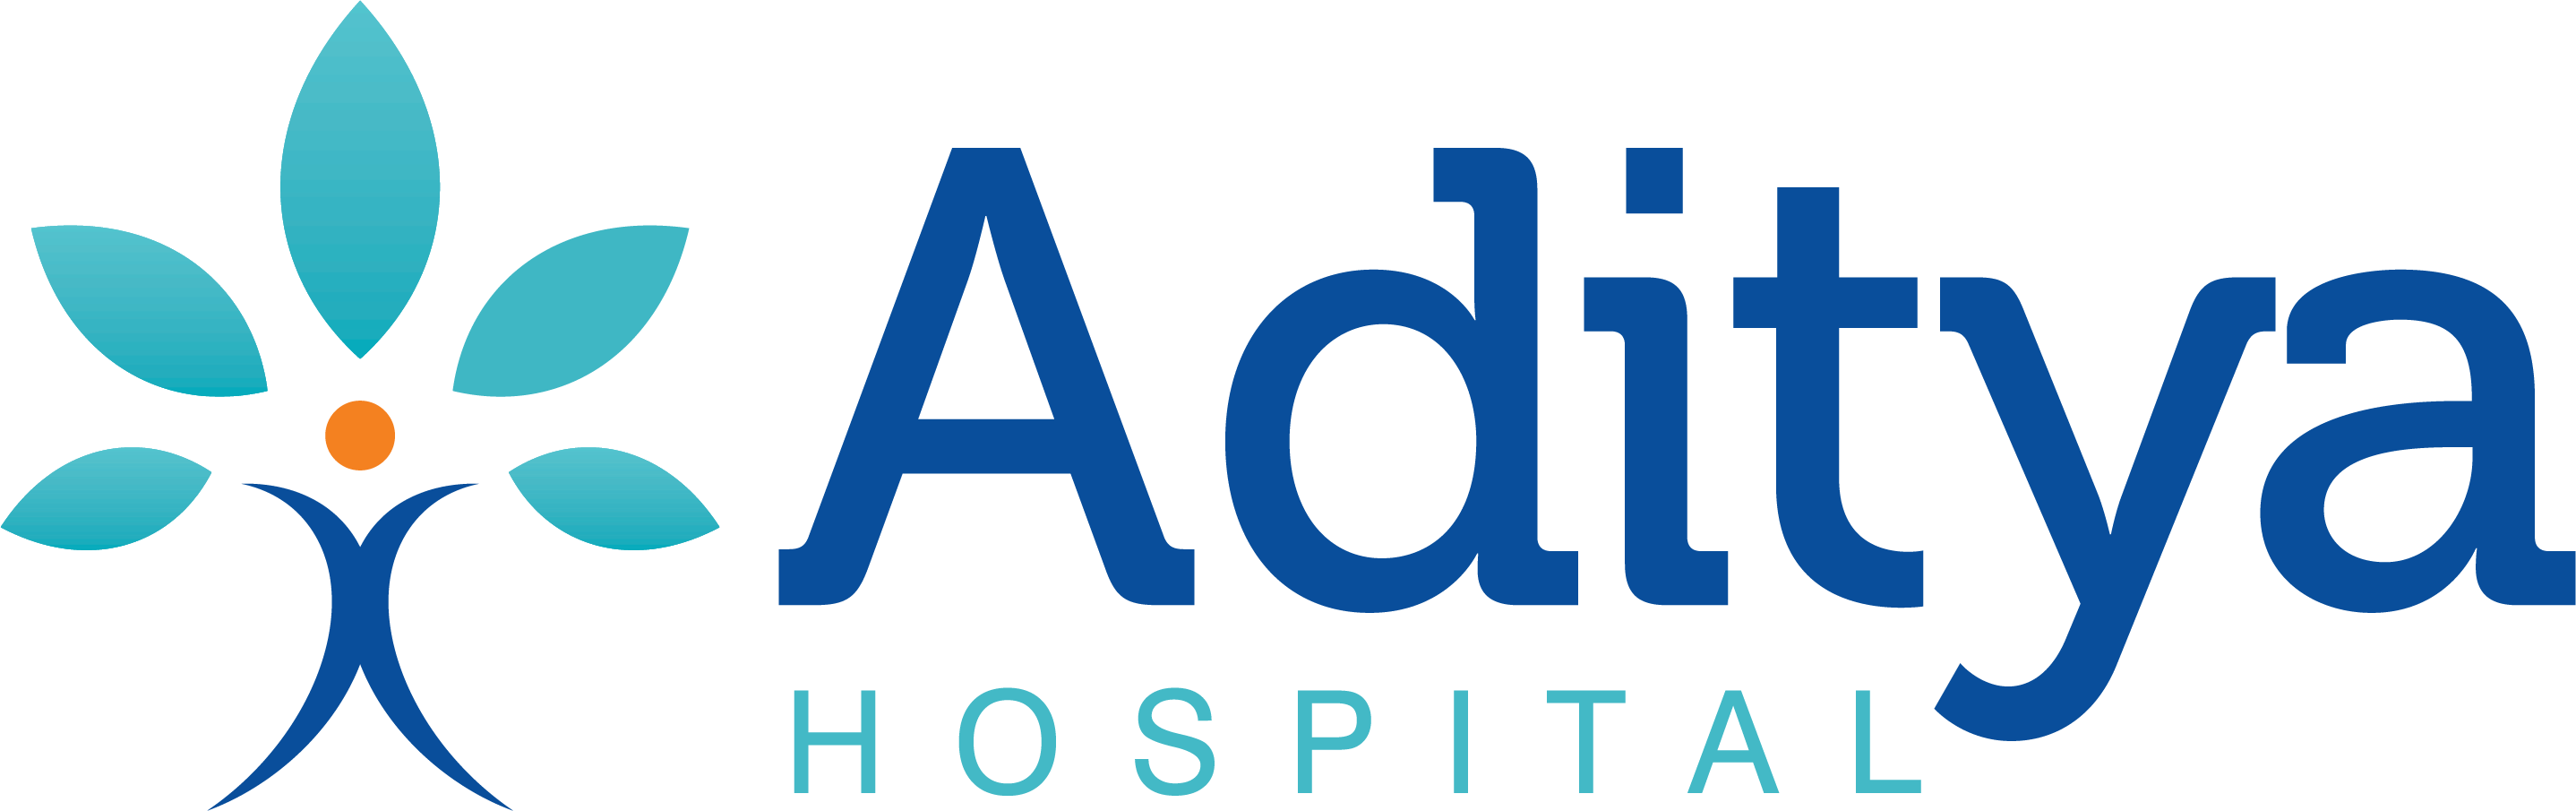 Aditya Hospital|Hospitals|Medical Services